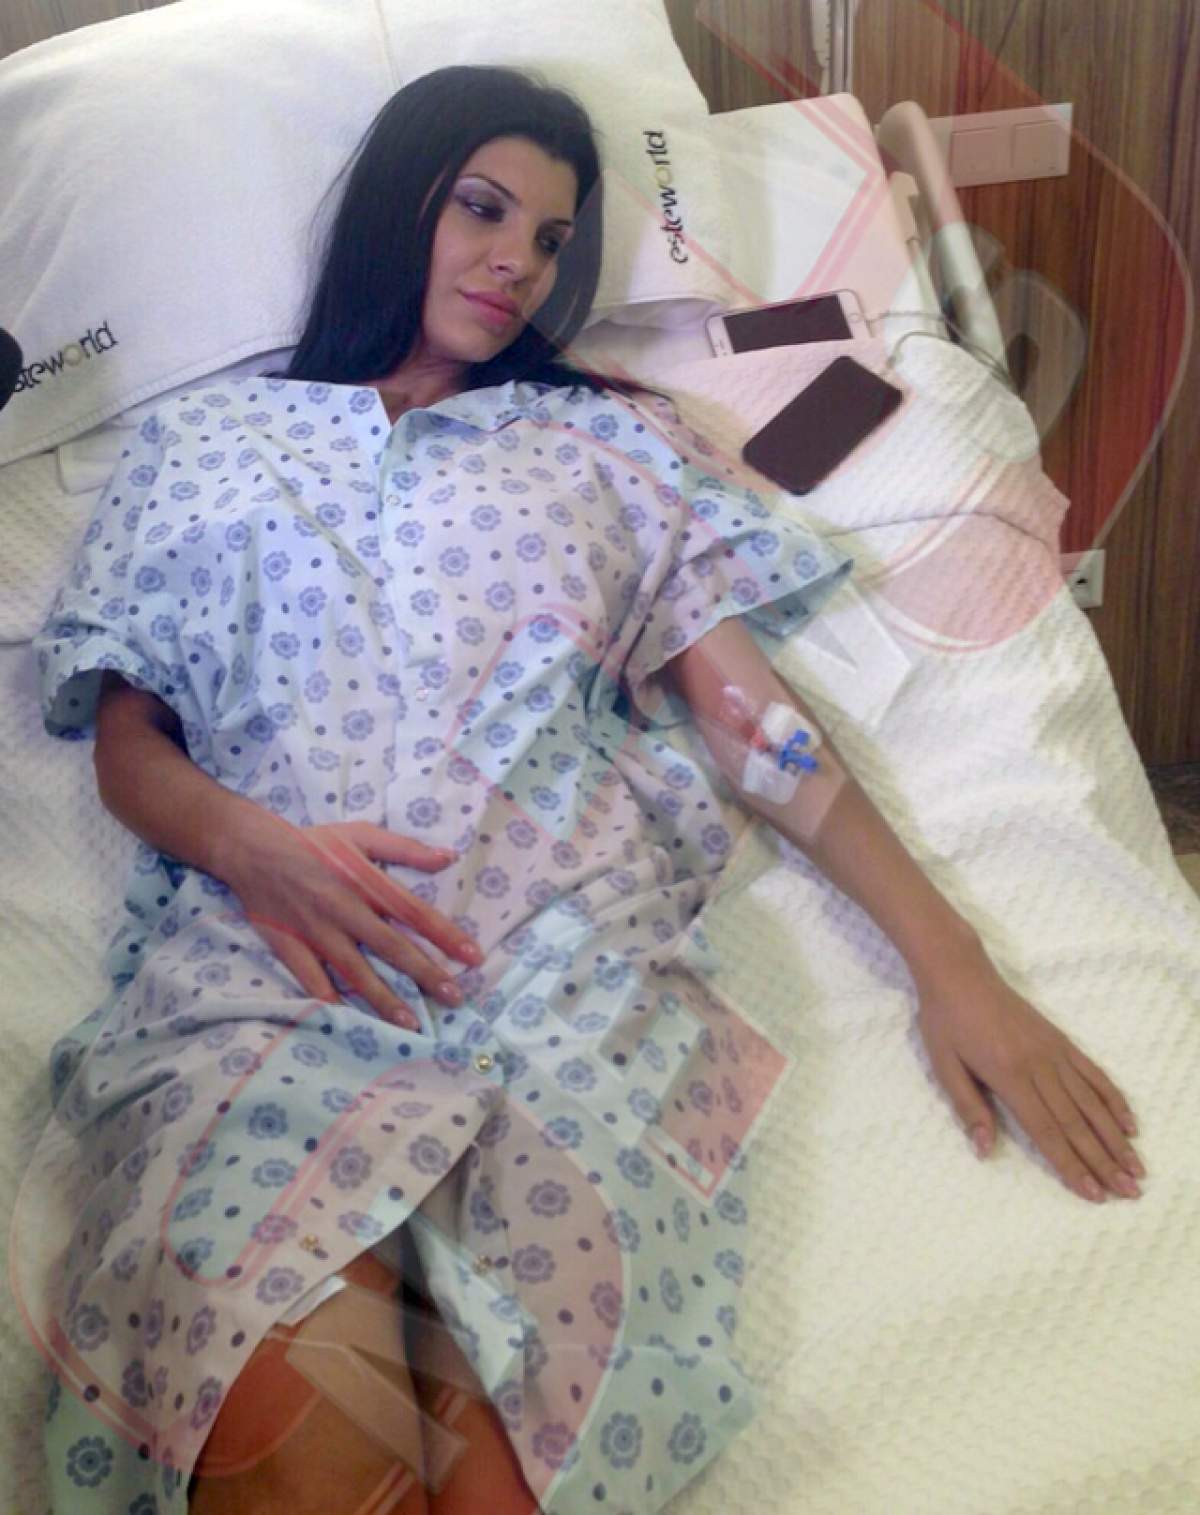 Andreea Tonciu a ajuns de urgenţă pe masa de operaţie! Imagini exclusive cu asistenta TV!